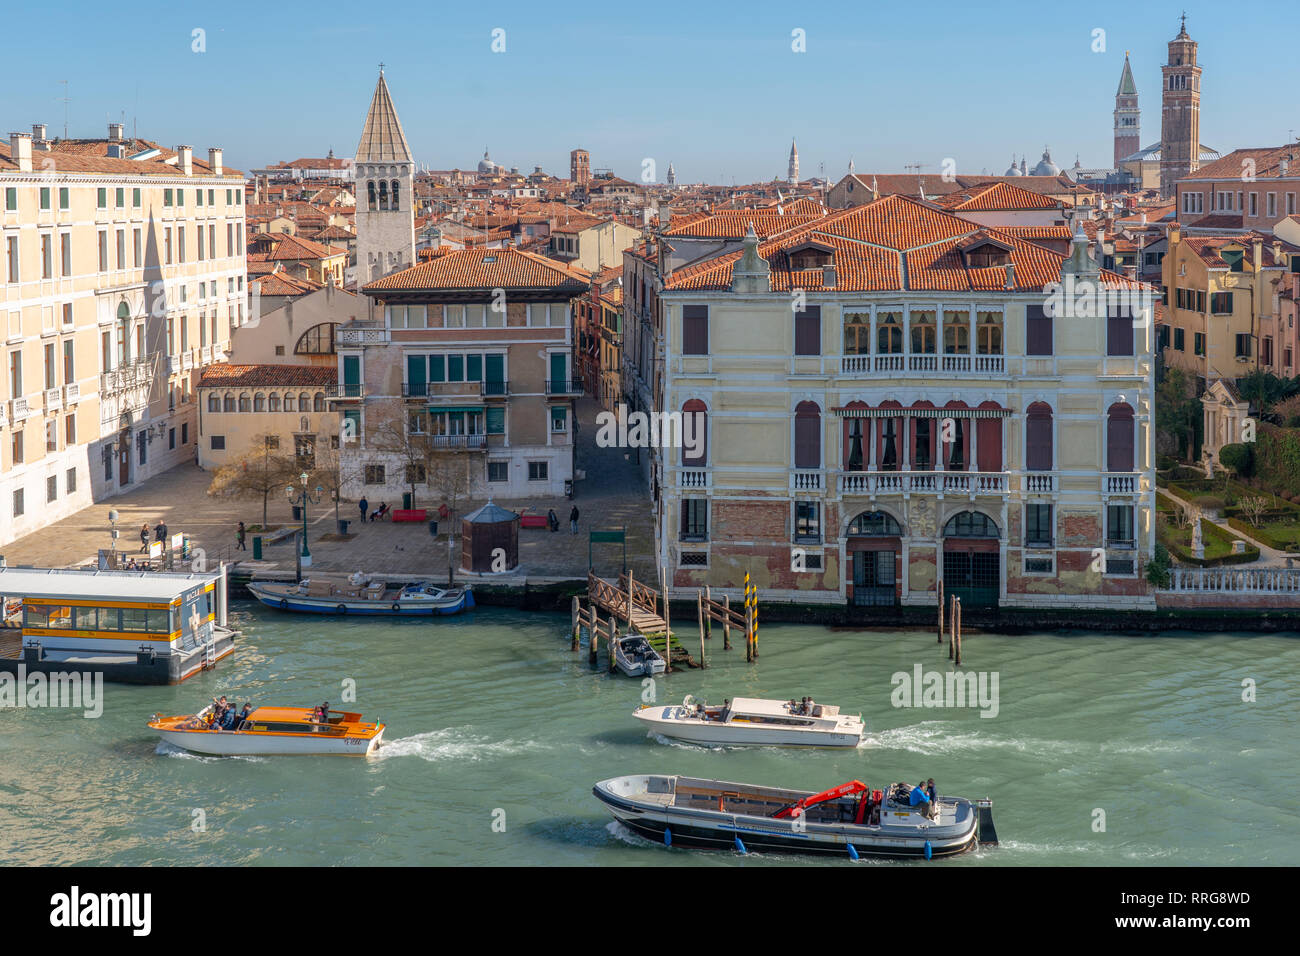 Viste generali dei tetti di Venezia. Da una serie di foto di viaggio in Italia. Foto data: mercoledì, 13 febbraio 2019. Foto: Roger Garfield/Alamy Foto Stock